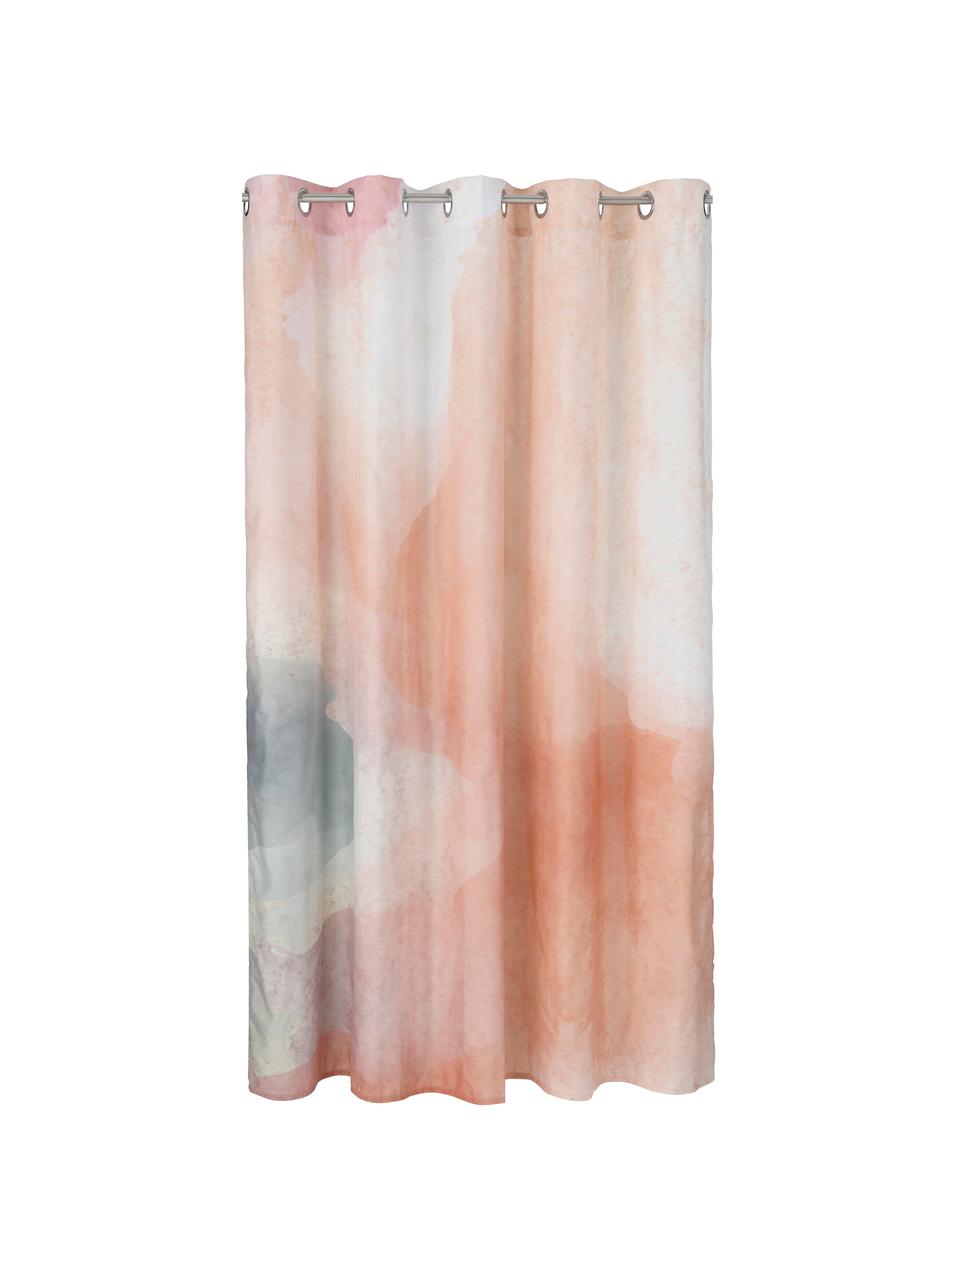 Duschvorhang Amelie mit abstraktem Muster, 100% Polyester, Mehrfarbig, B 180 x L 200 cm